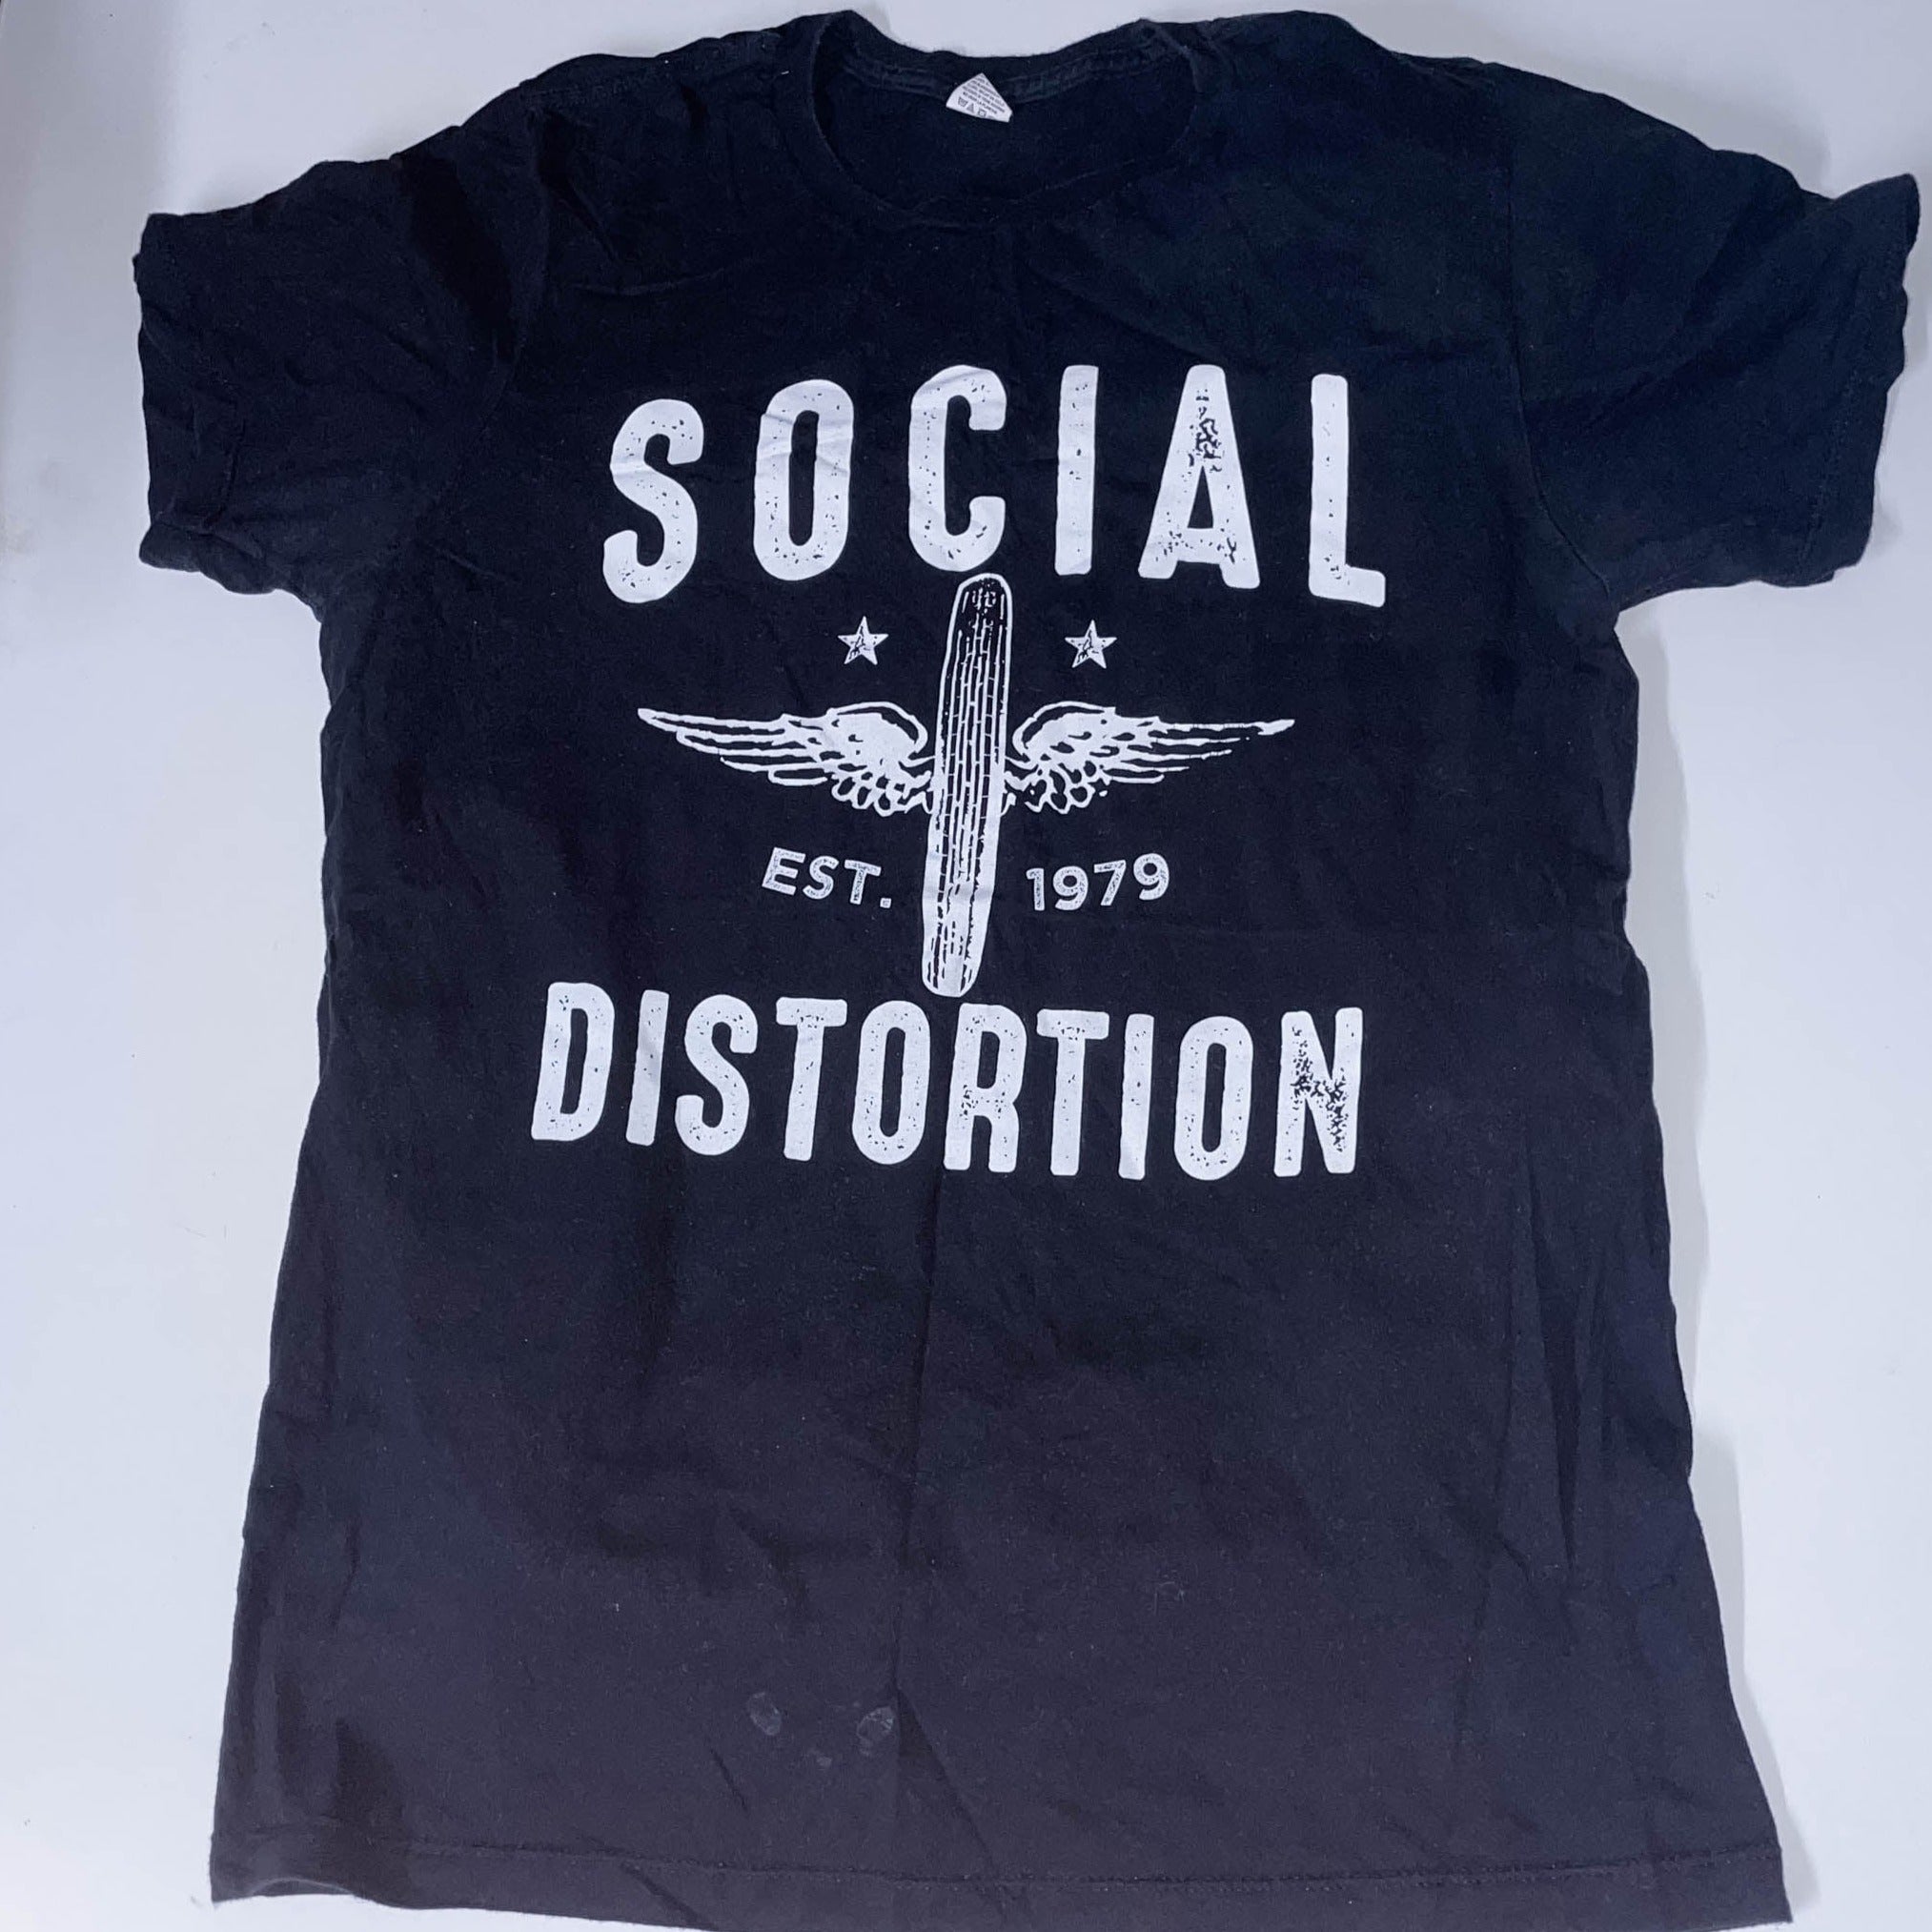 Vintage Social distortion est 1979 Black Large tees